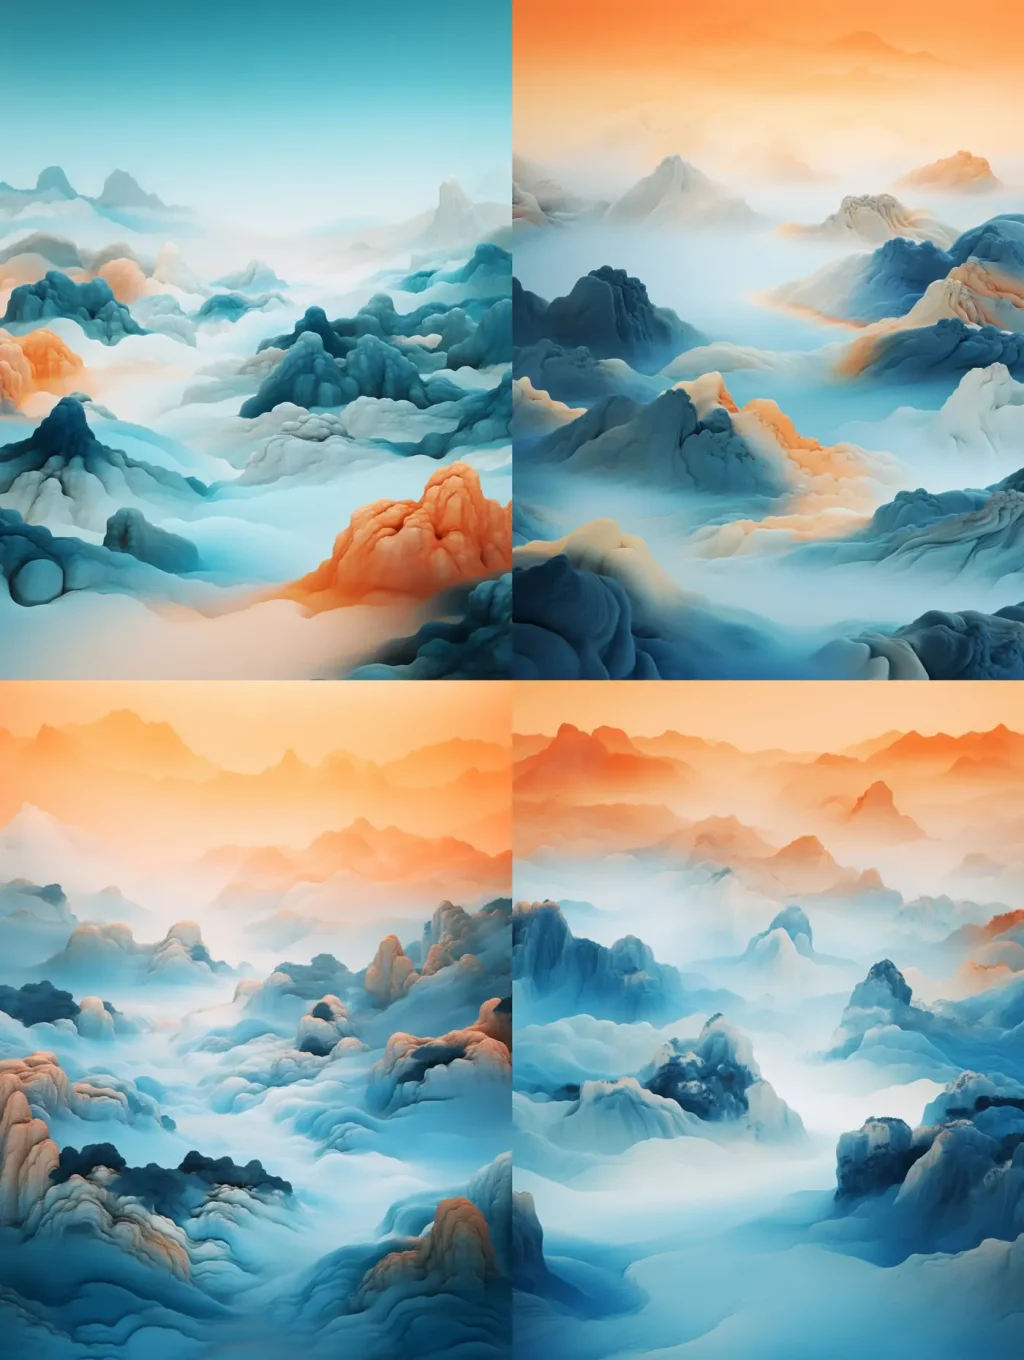 超现实主义中国风彩色山水风景画云端水墨画风格艺术插图海报背景 